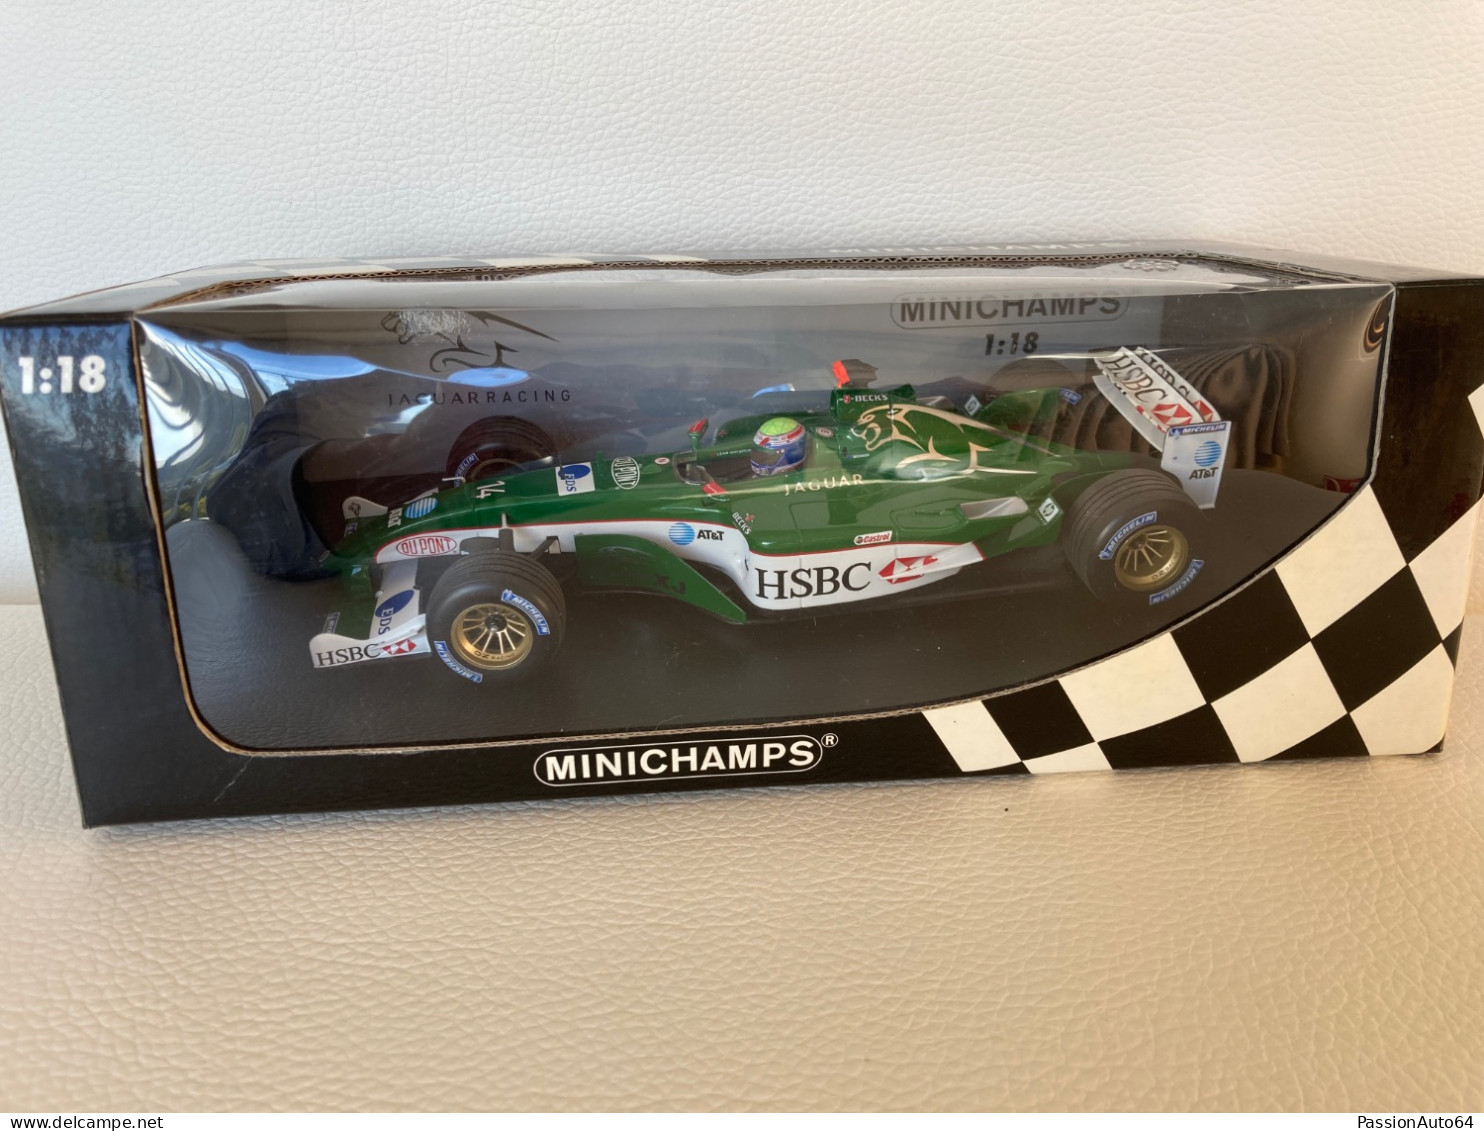 1/18 Minichamps Jaguar Racing R4 M. Webber F1 2003 no Hot Wheels Elite Exoto BBR GP Replicas